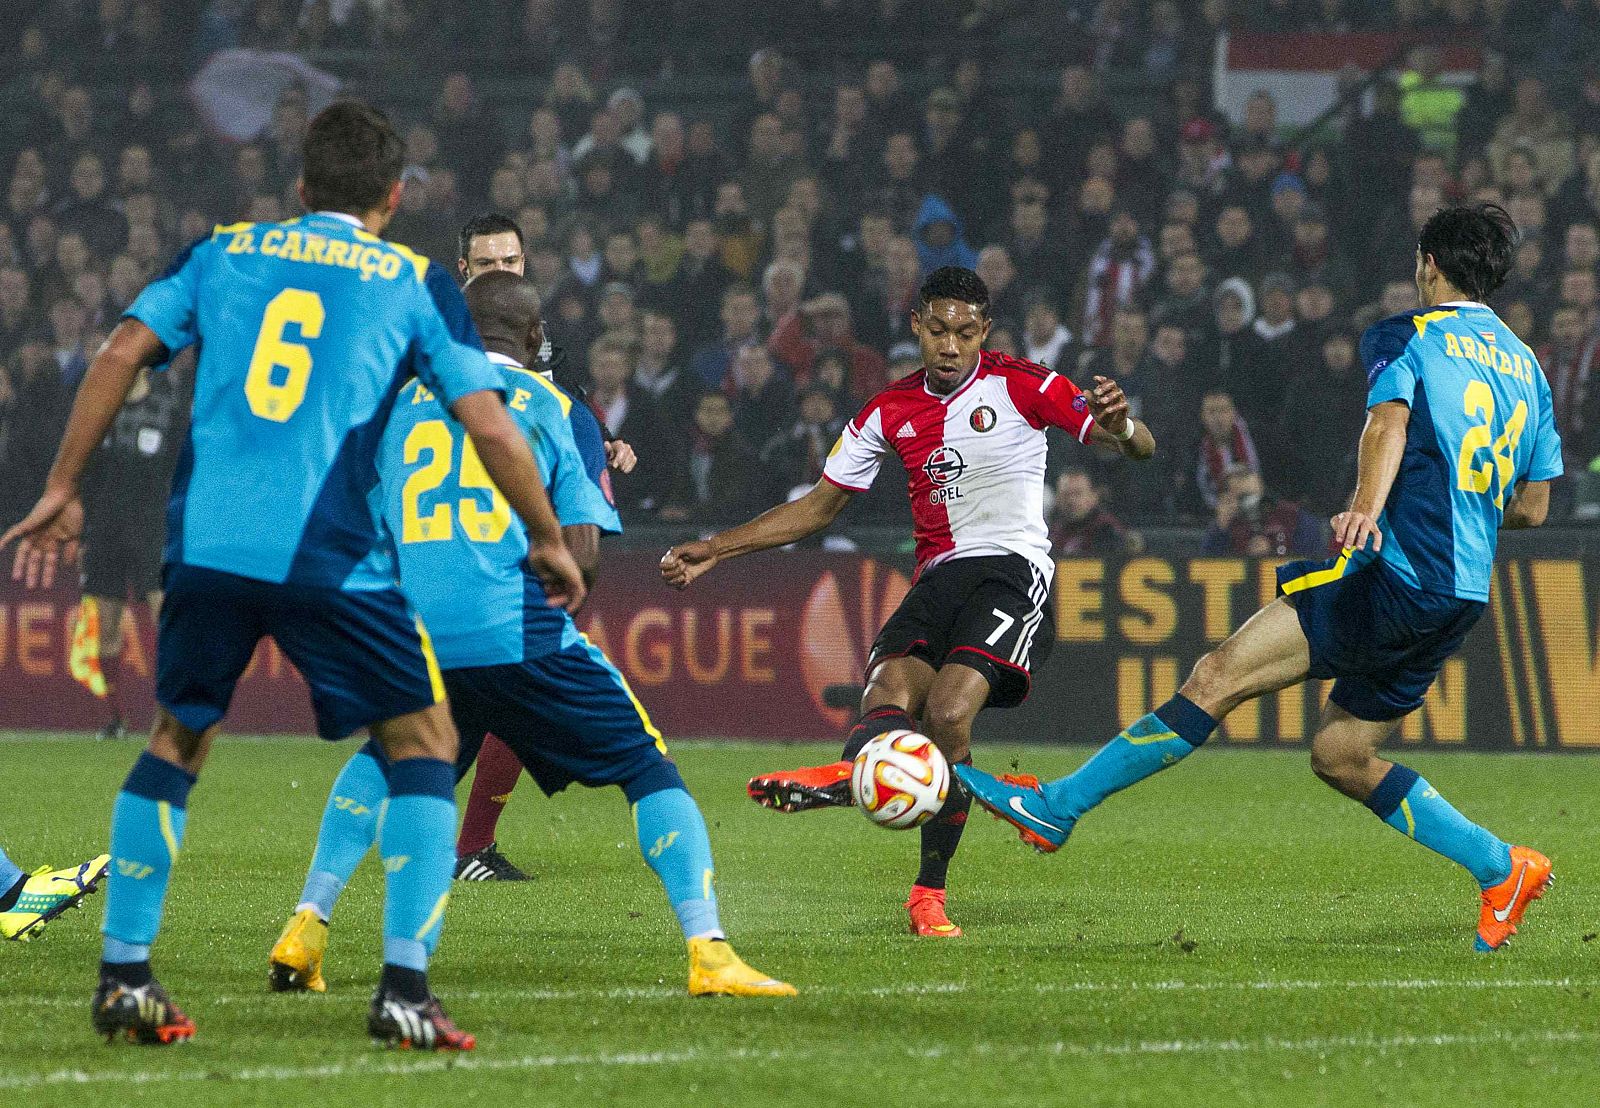 La victoria del Feyenoord ha complicado mucho las opciones de ser primero del Sevilla.